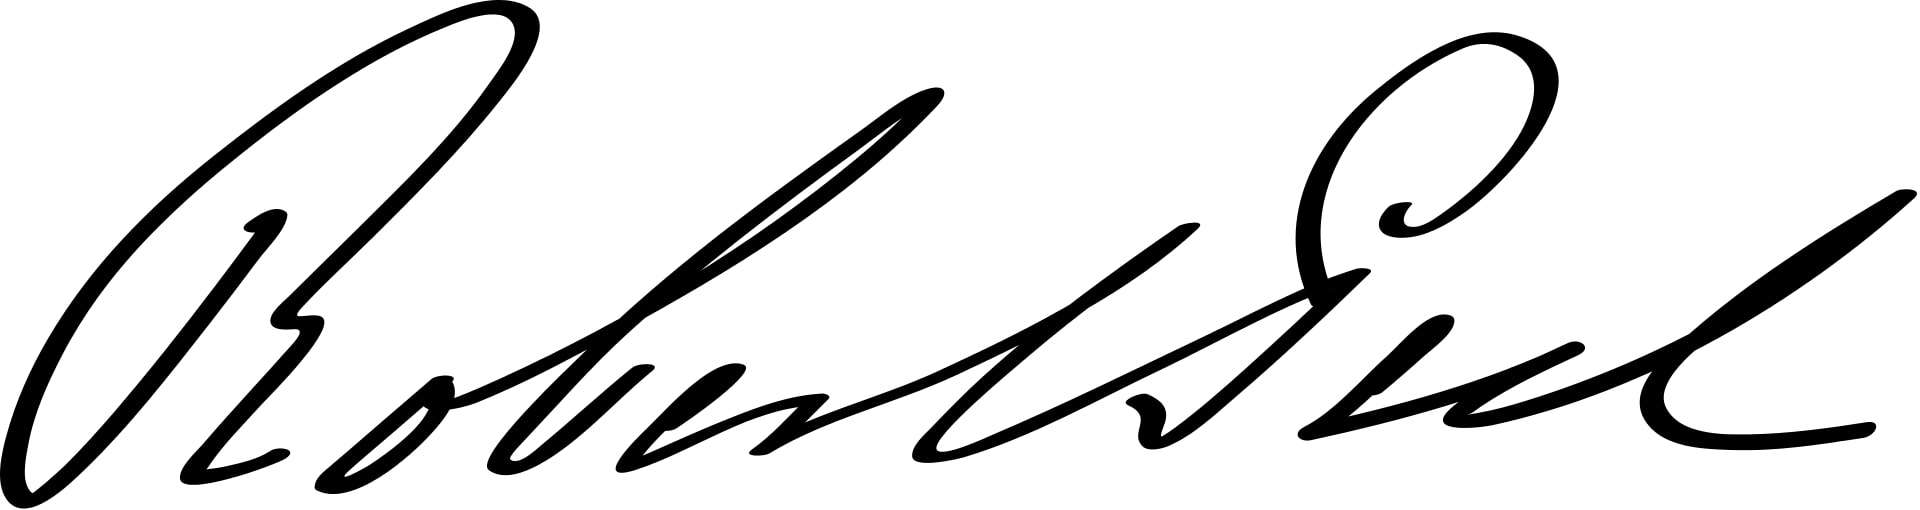 Robert Peel Signature